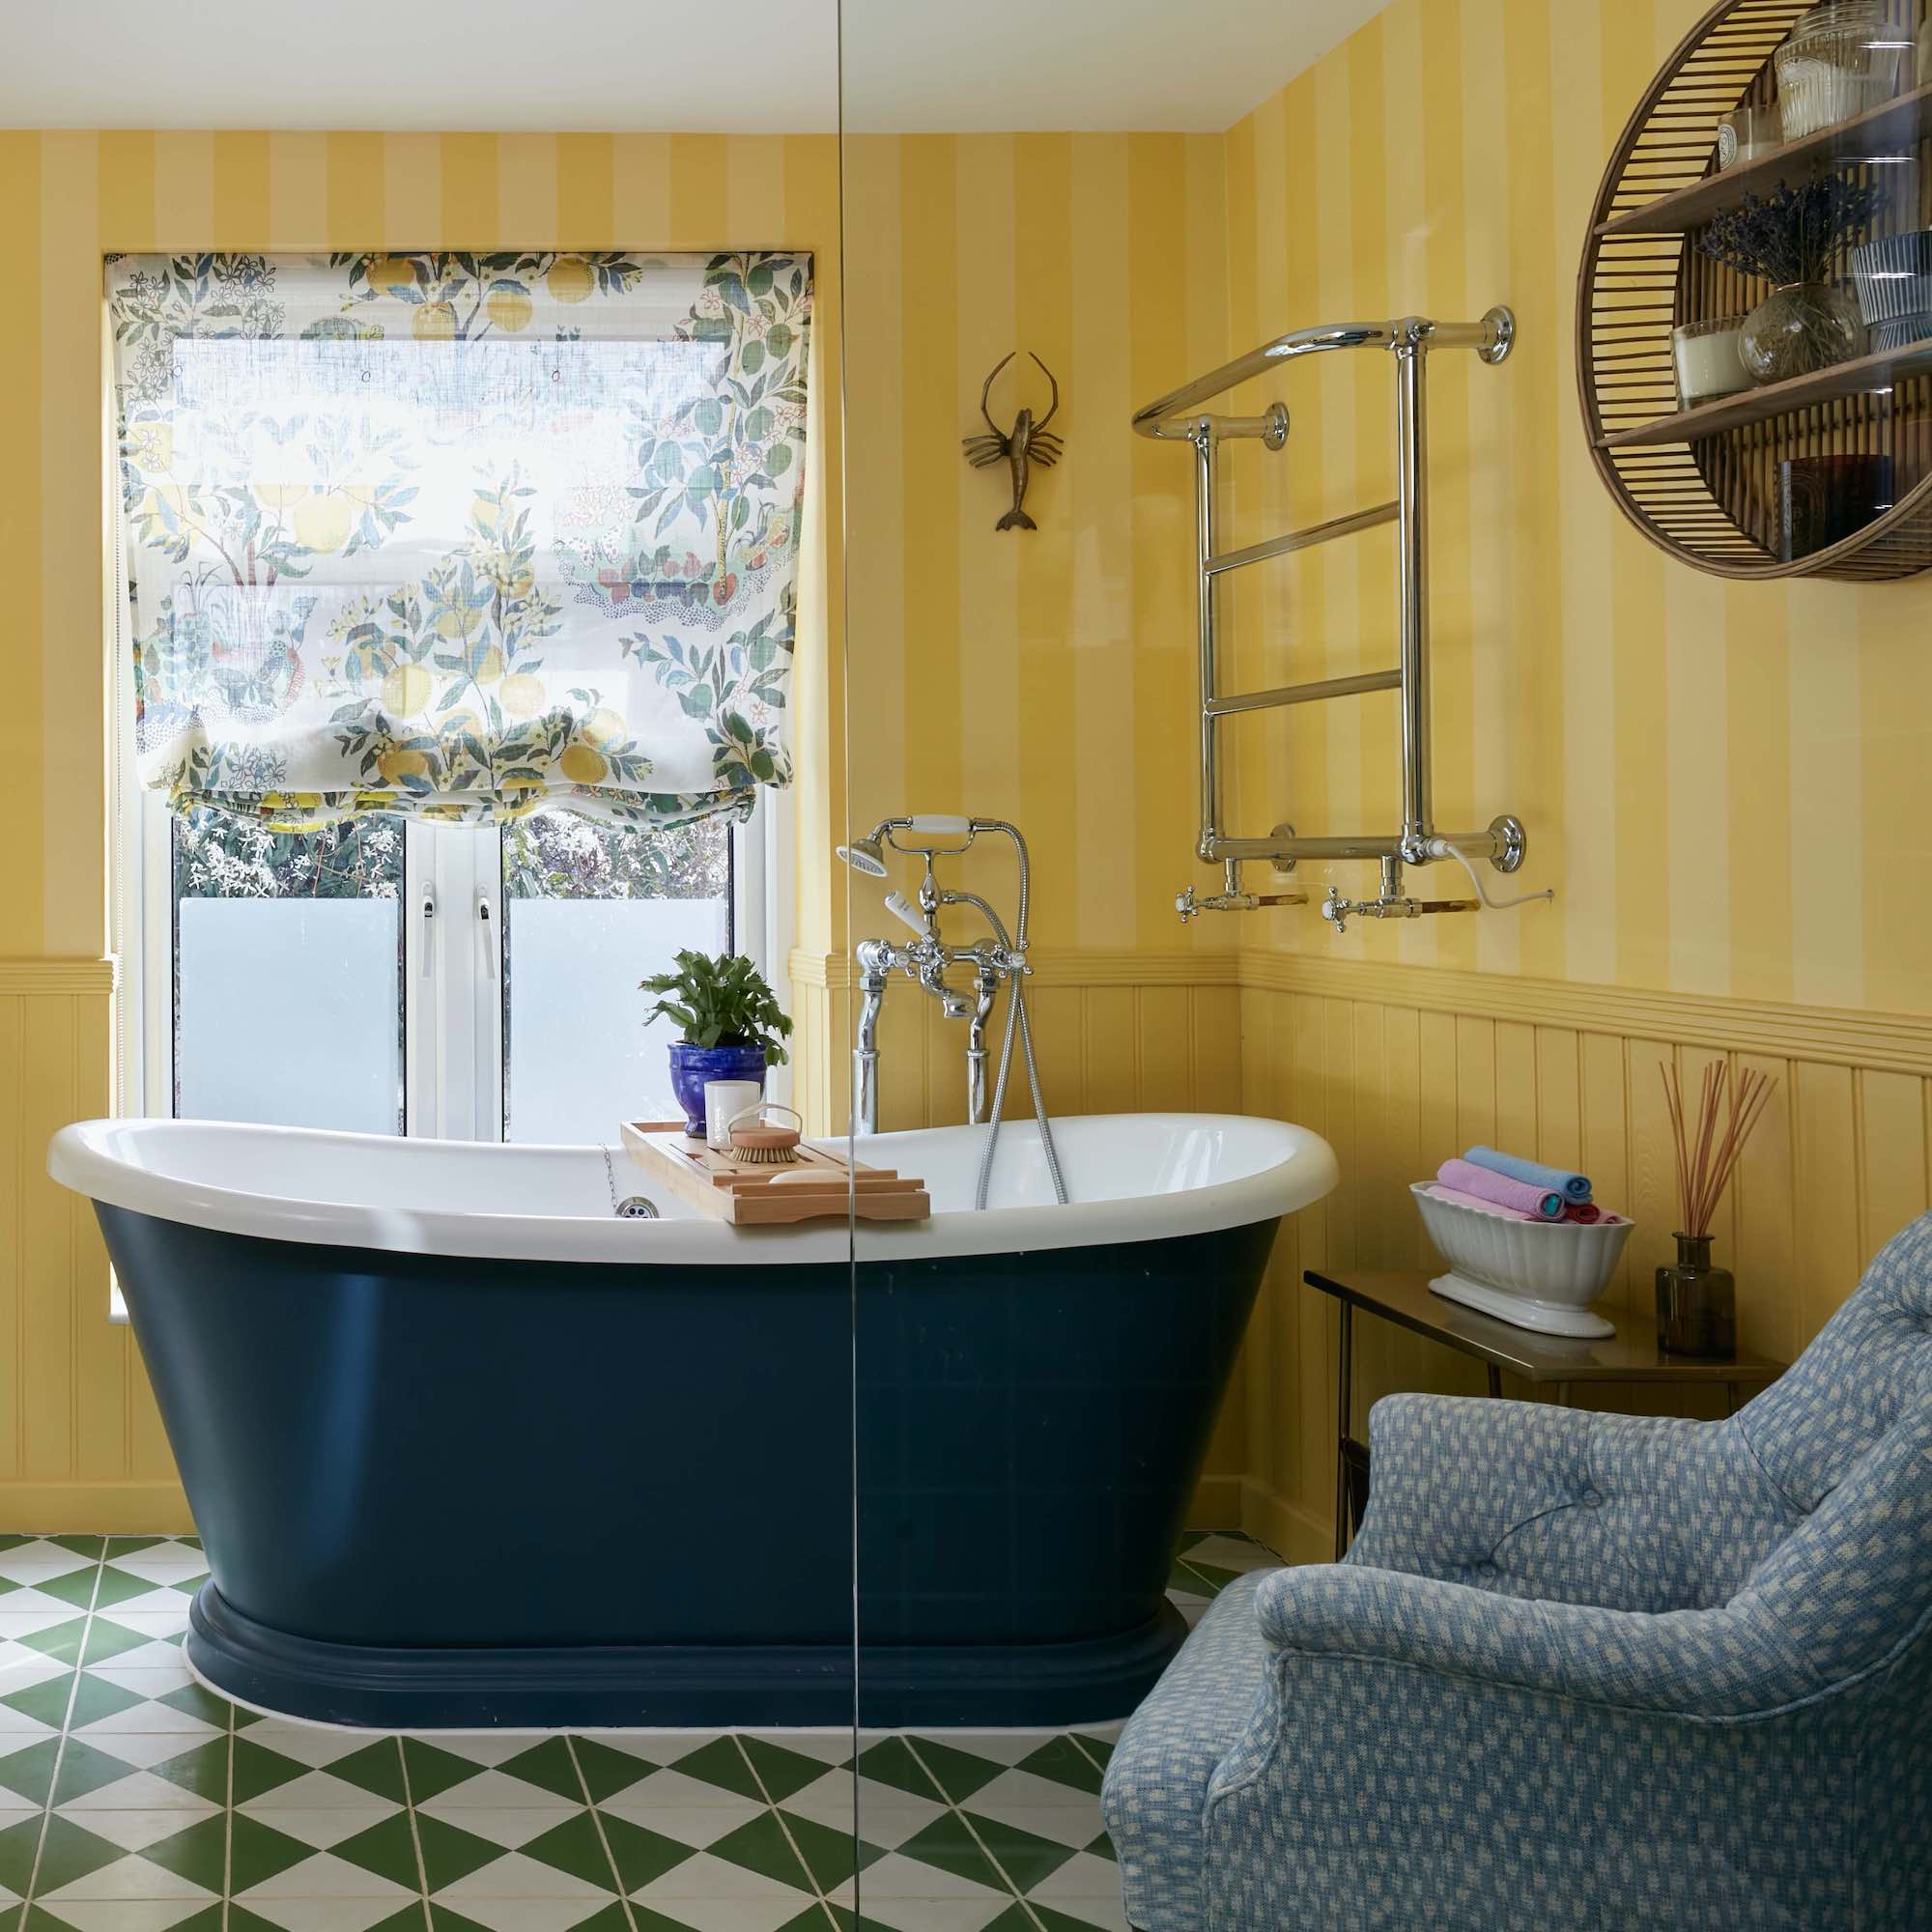 black bateau bath in yellow bathroom with armchair